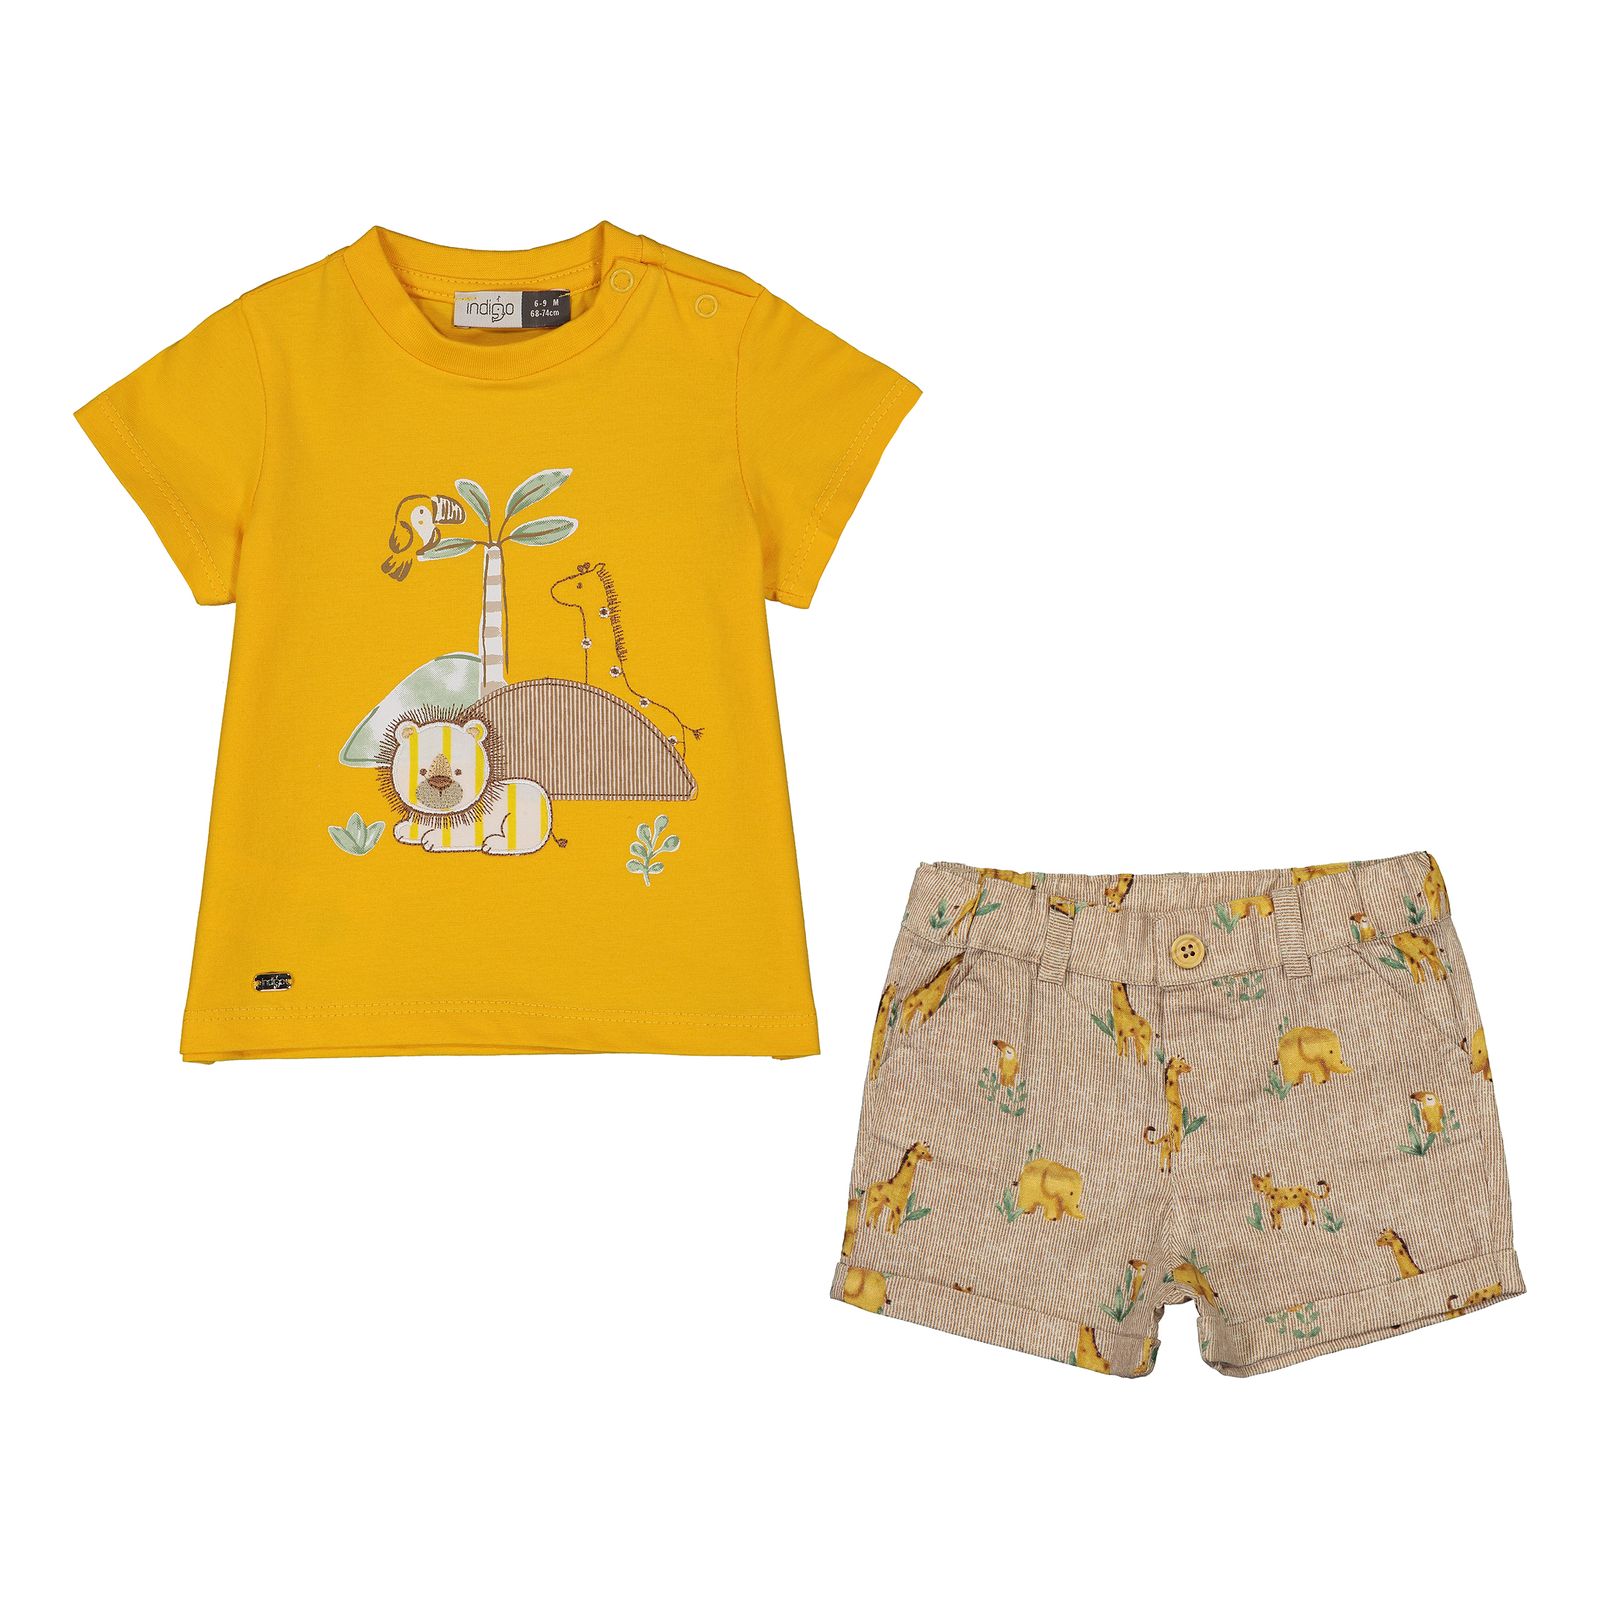 ست تی شرت و شلوارک نوزادی ایندیگو مدل 13235 رنگ زرد -  - 1